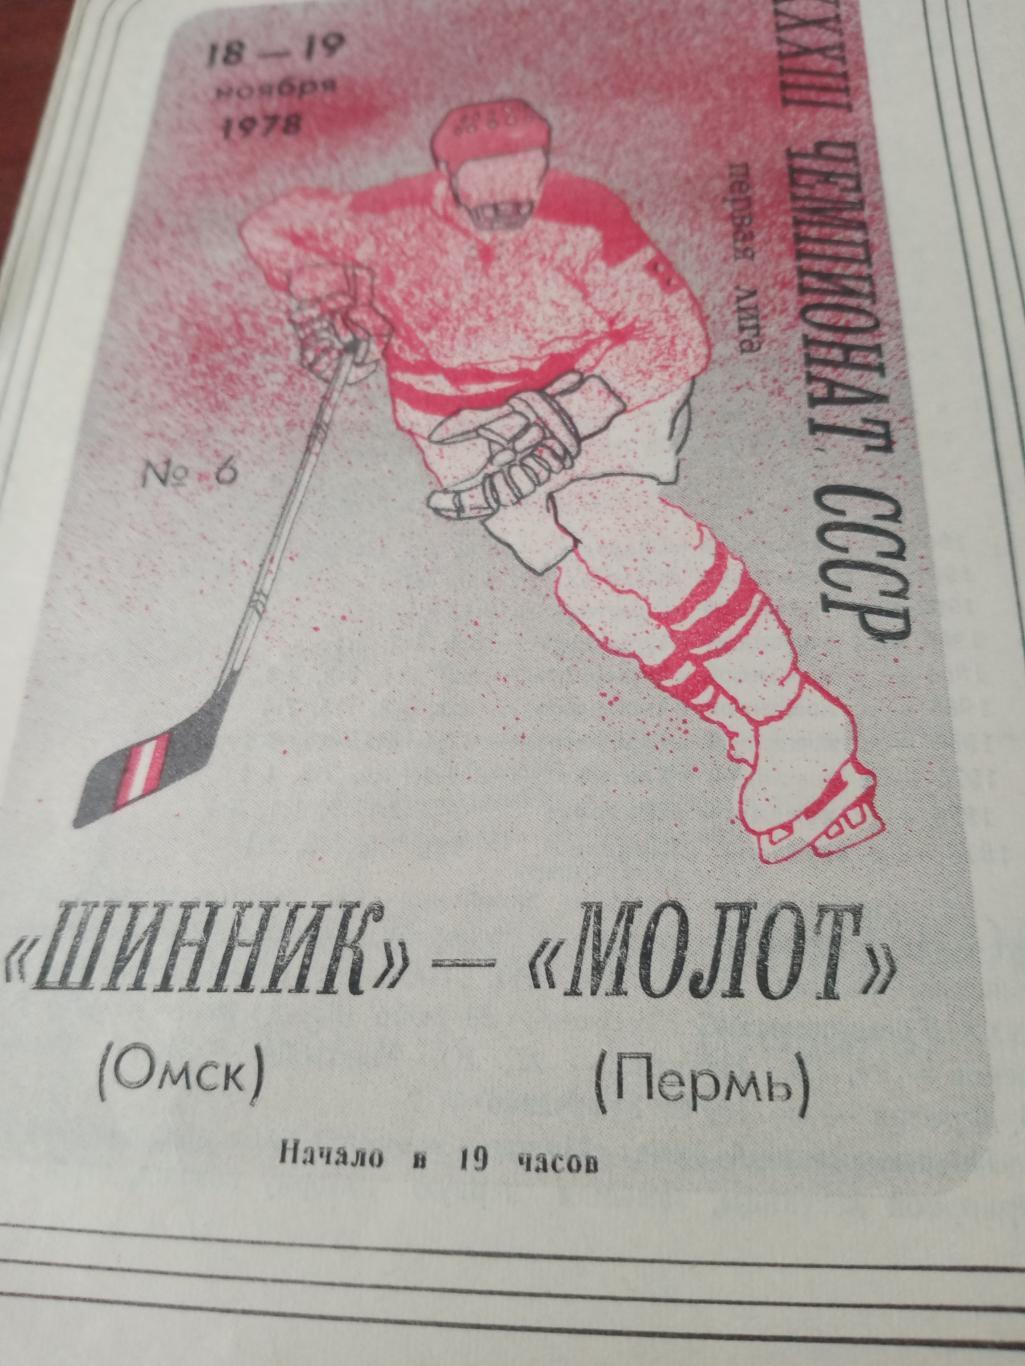 Шинник Омск - Молот Пермь. 18 и 19 ноября 1978 год